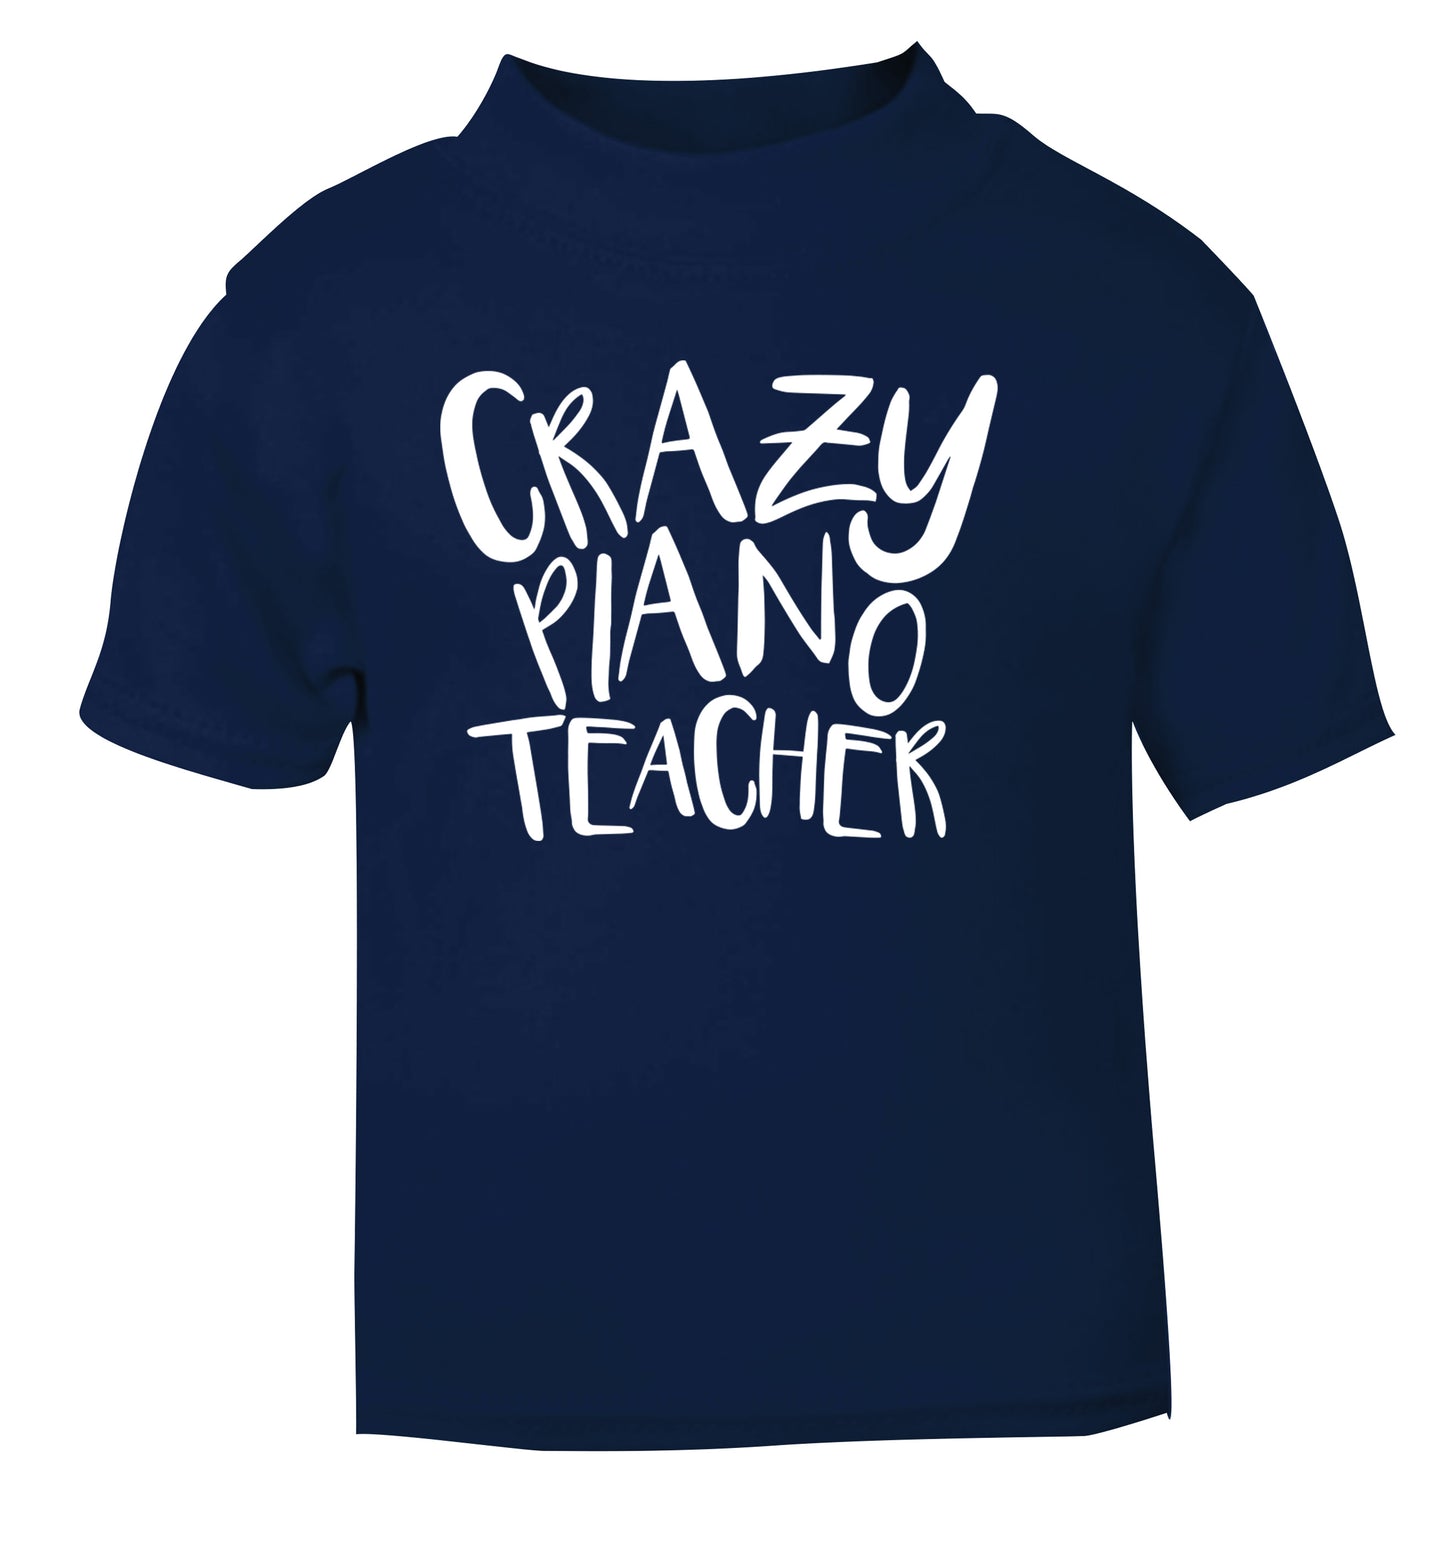 Crazy piano teacher navy Baby Toddler Tshirt 2 Years